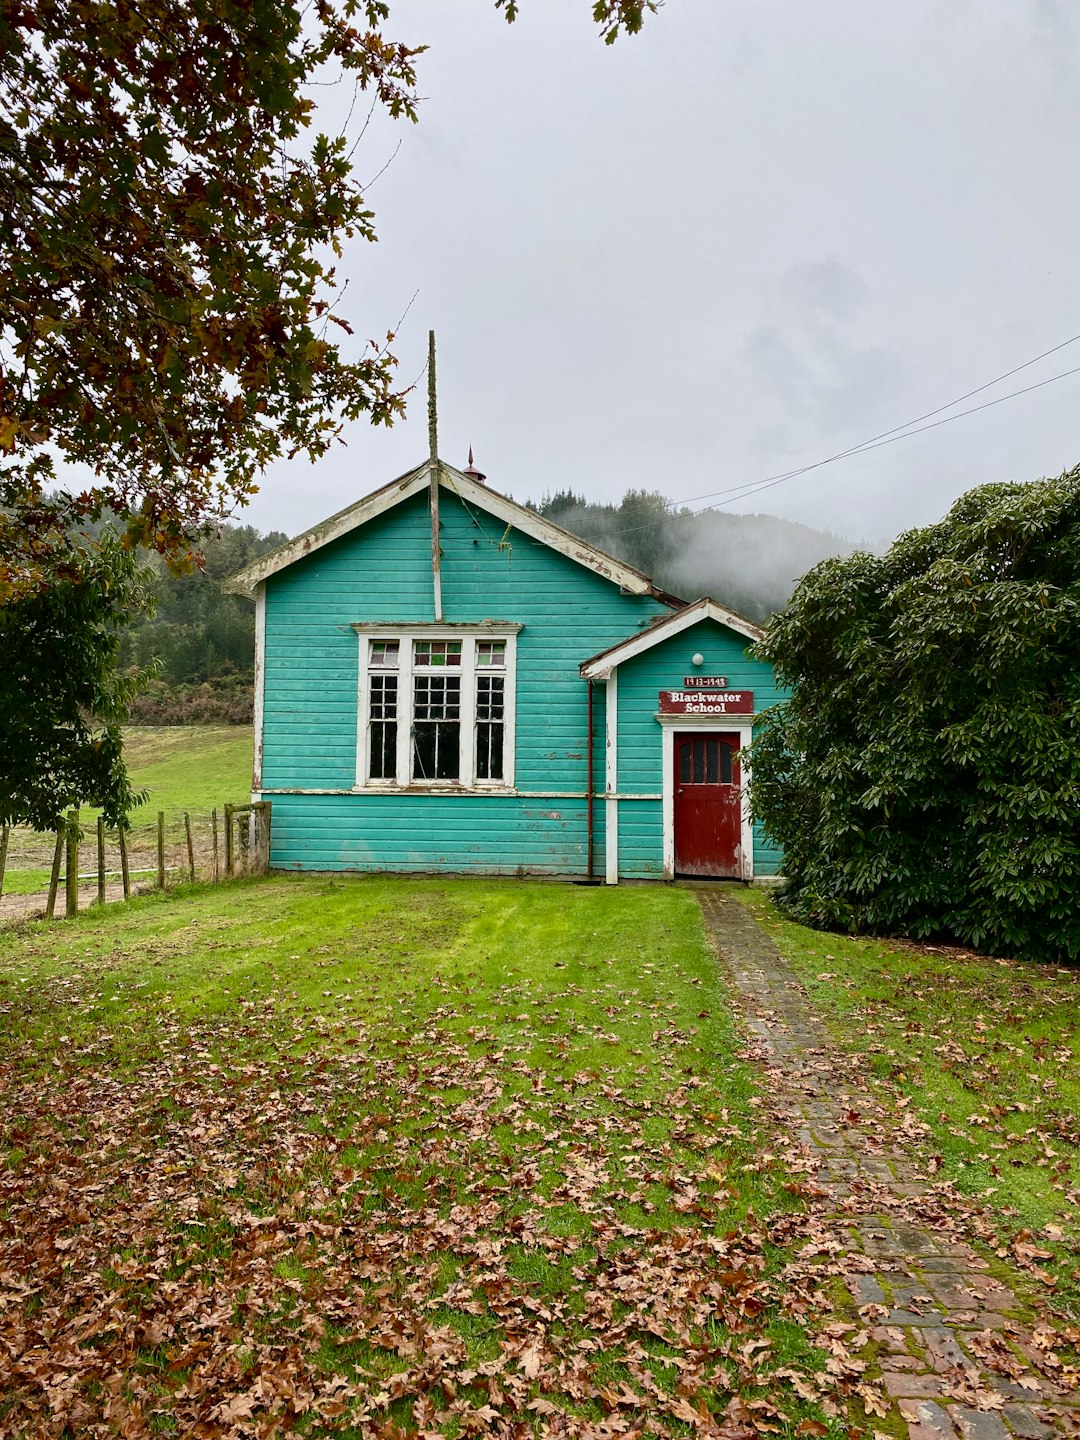 Cottage photo spot New Zealand New Zealand